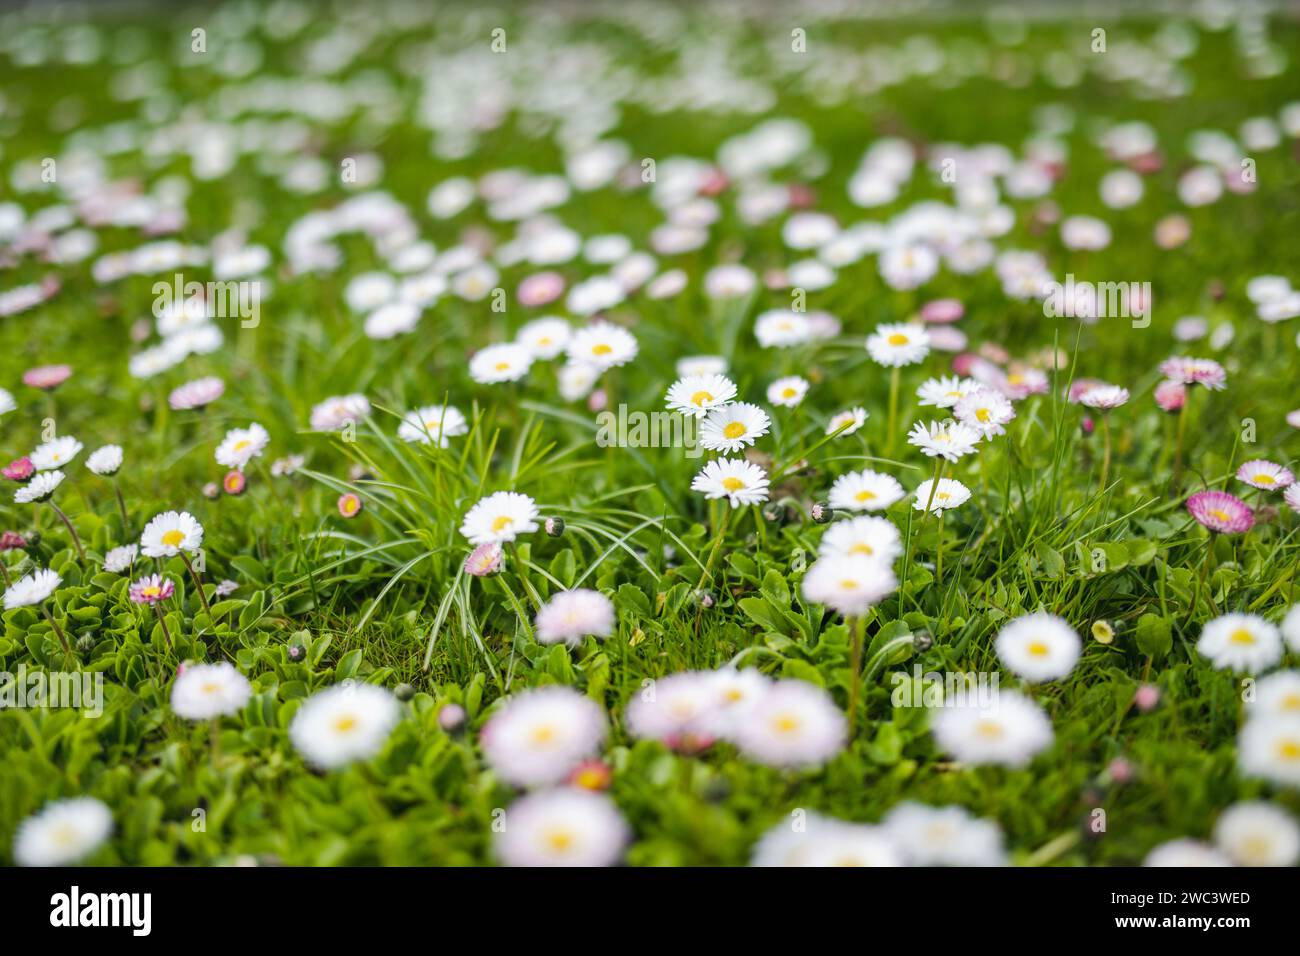 Bel prato in primavera pieno di margherite fiorite bianche e rosa su erba verde. Prato a margherita. Bellis perennis. Foto Stock